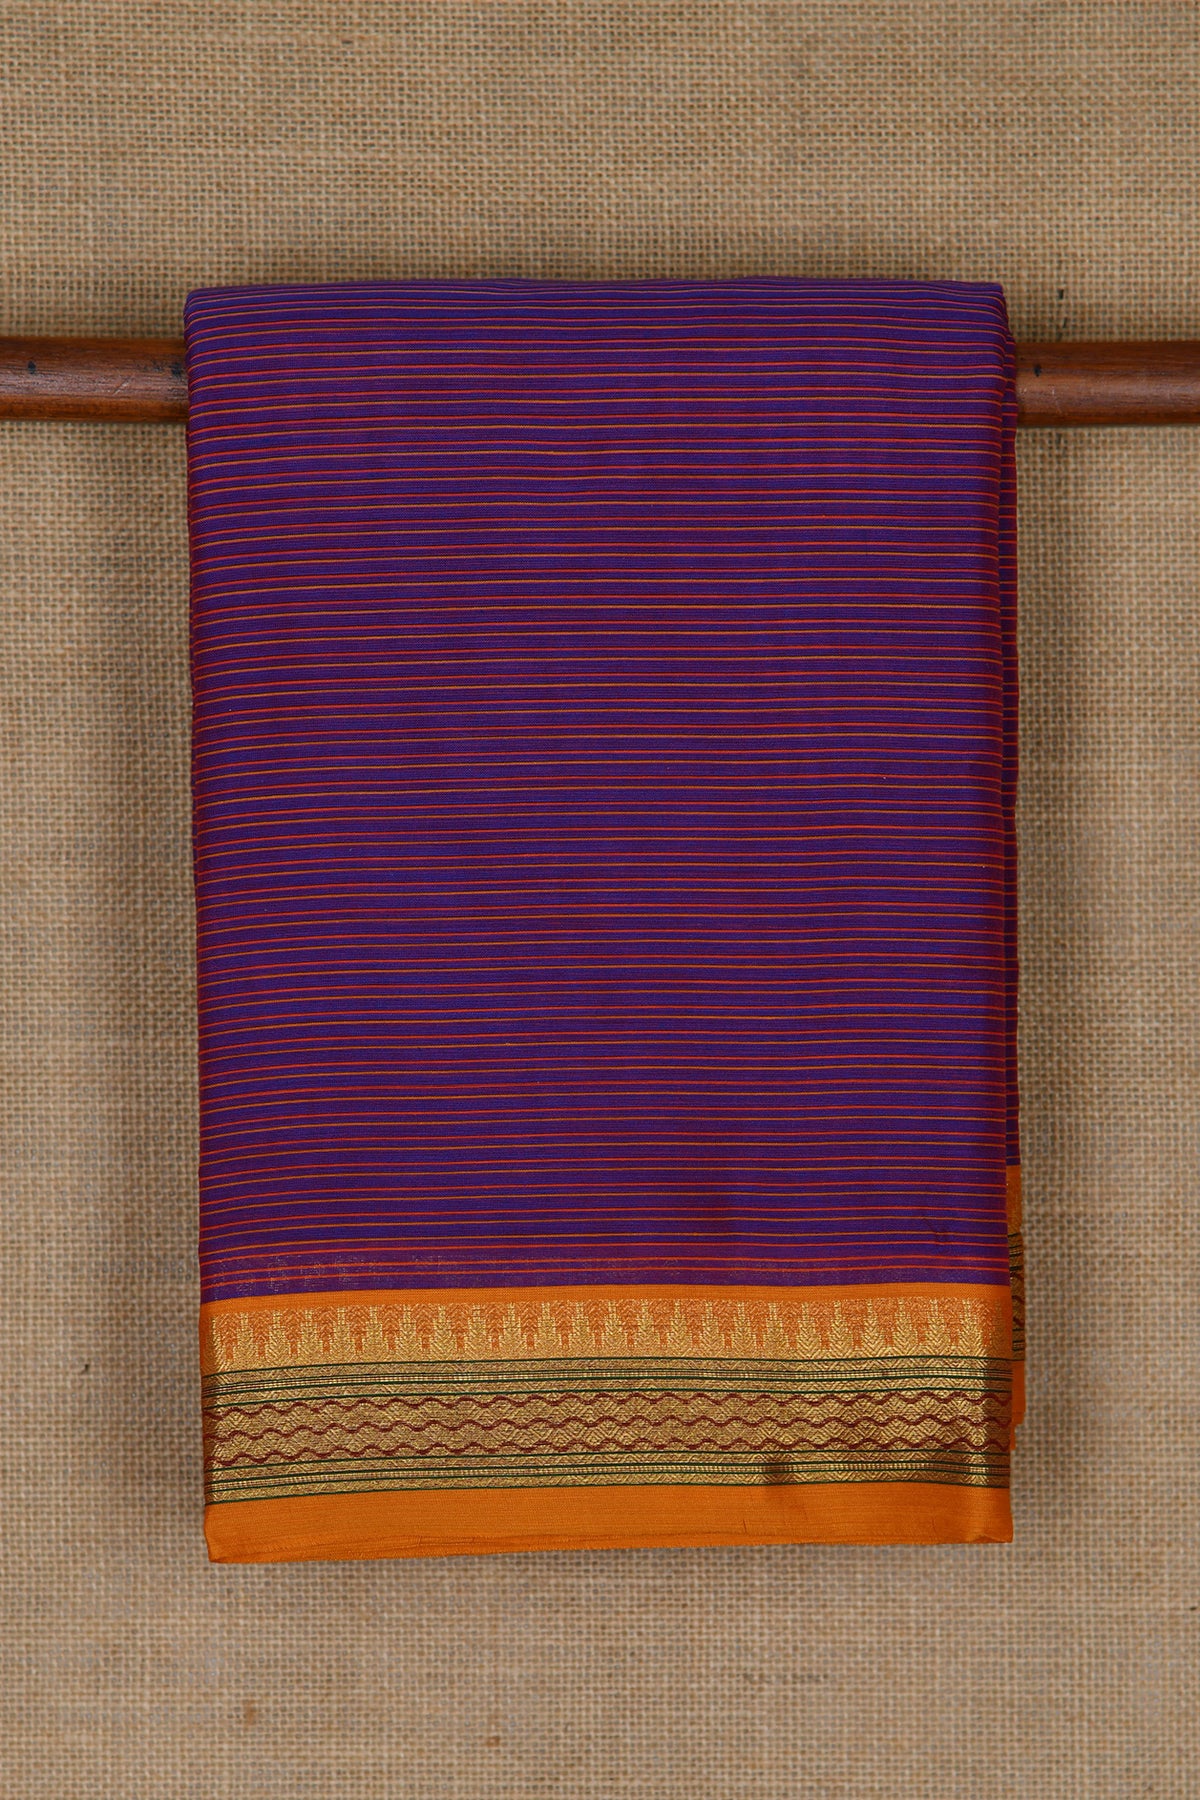 Temple Zari Border With Stripes Violet Kalyani Cotton Saree